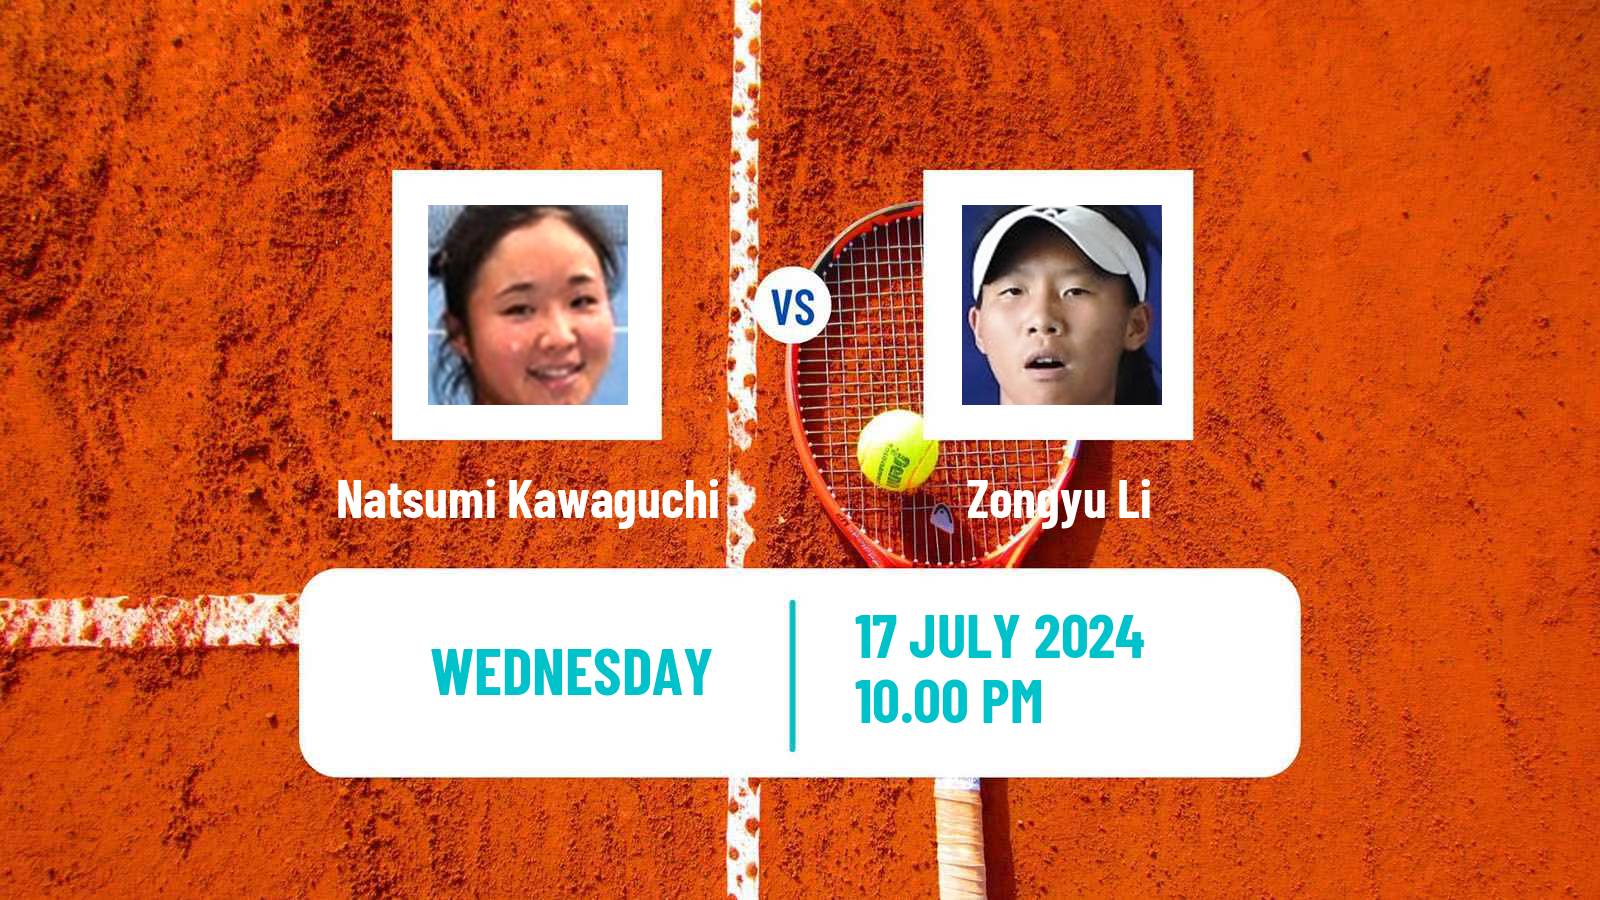 Tennis ITF W35 Tianjin 2 Women Natsumi Kawaguchi - Zongyu Li